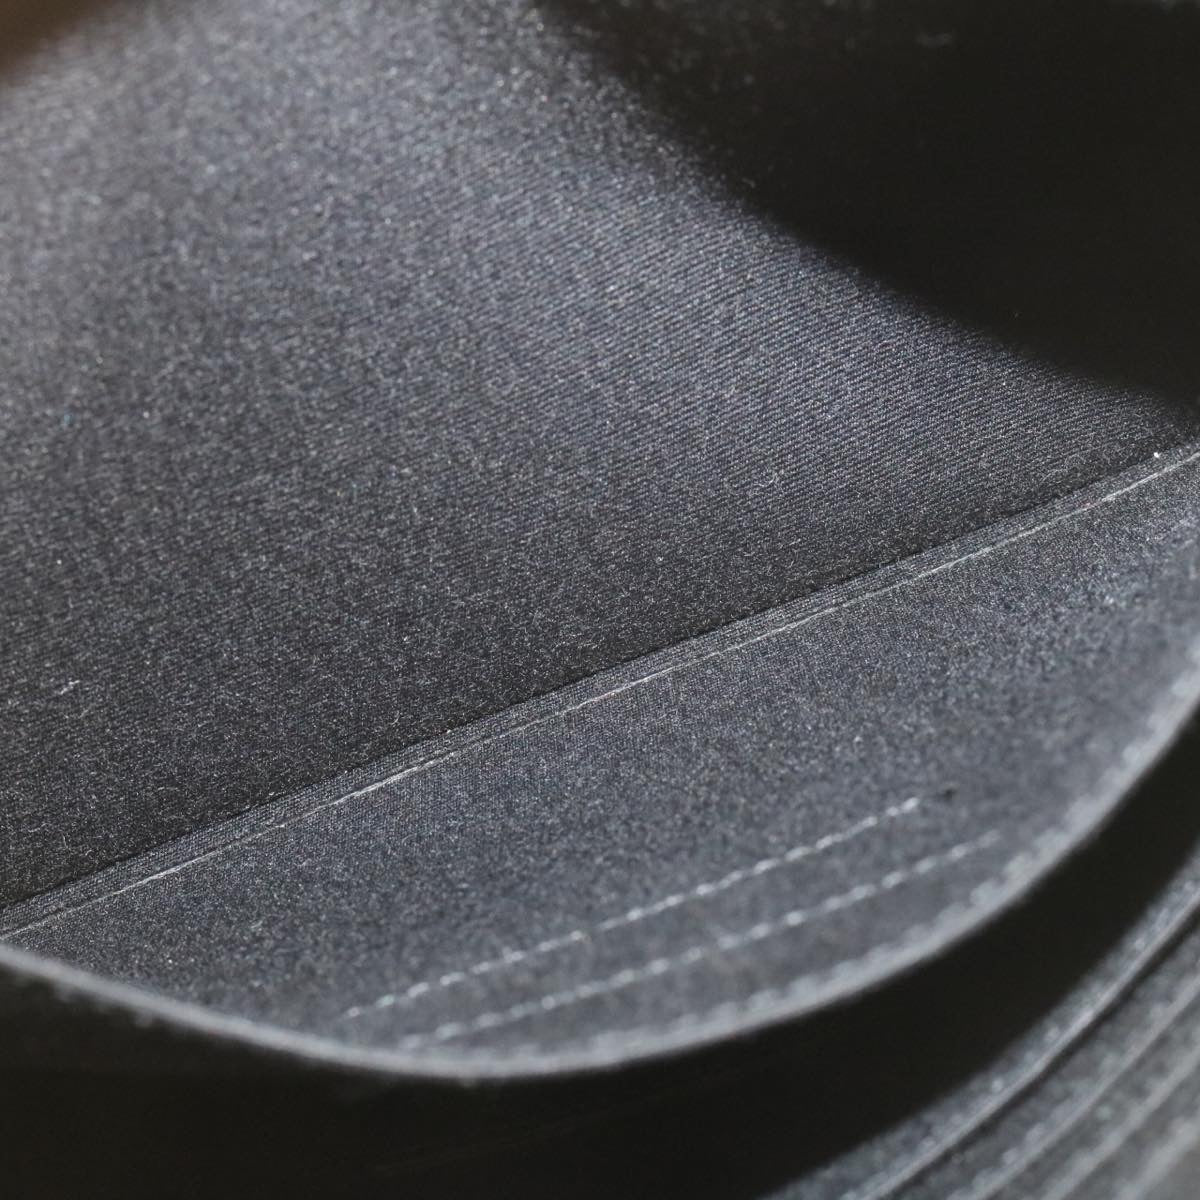 Yves Saint Laurent Unisex Leather Shoulder Bag in Black